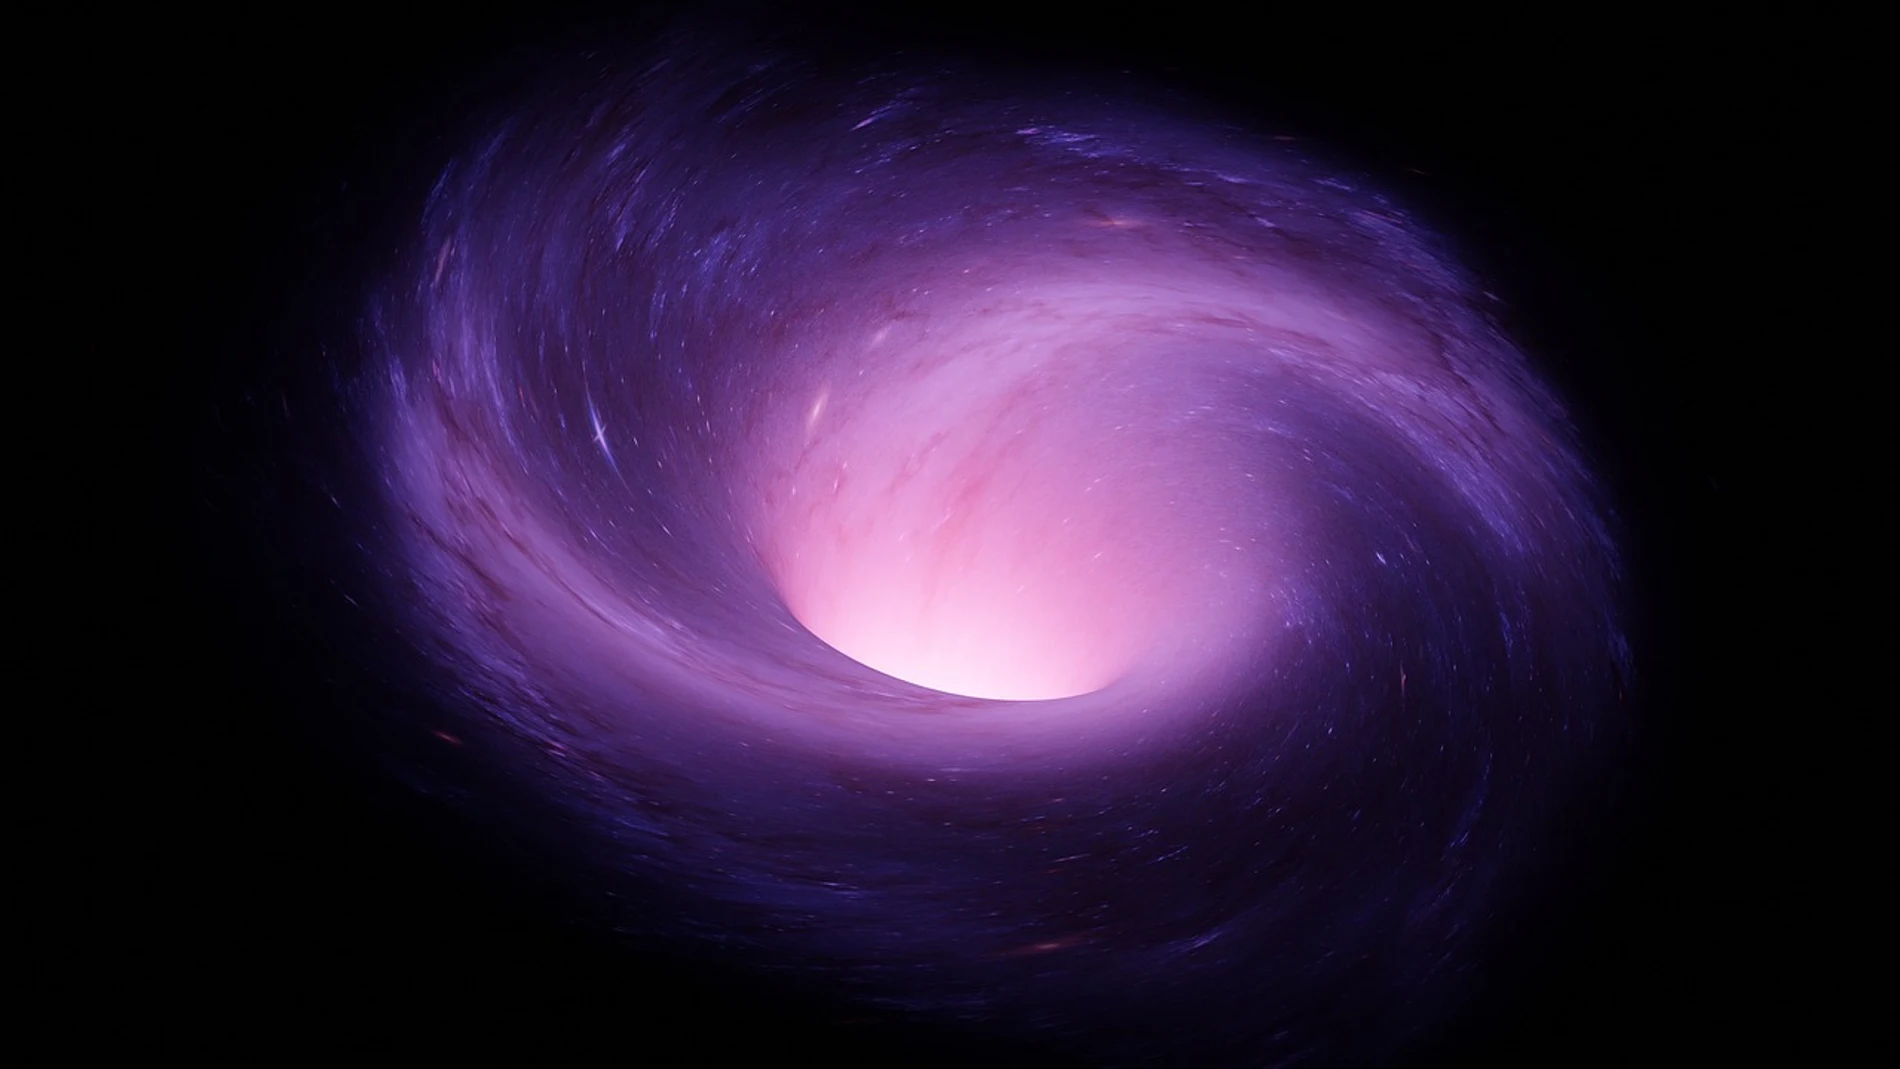 Expertos descubren un agujero negro supermasivo extremo en el borde del universo